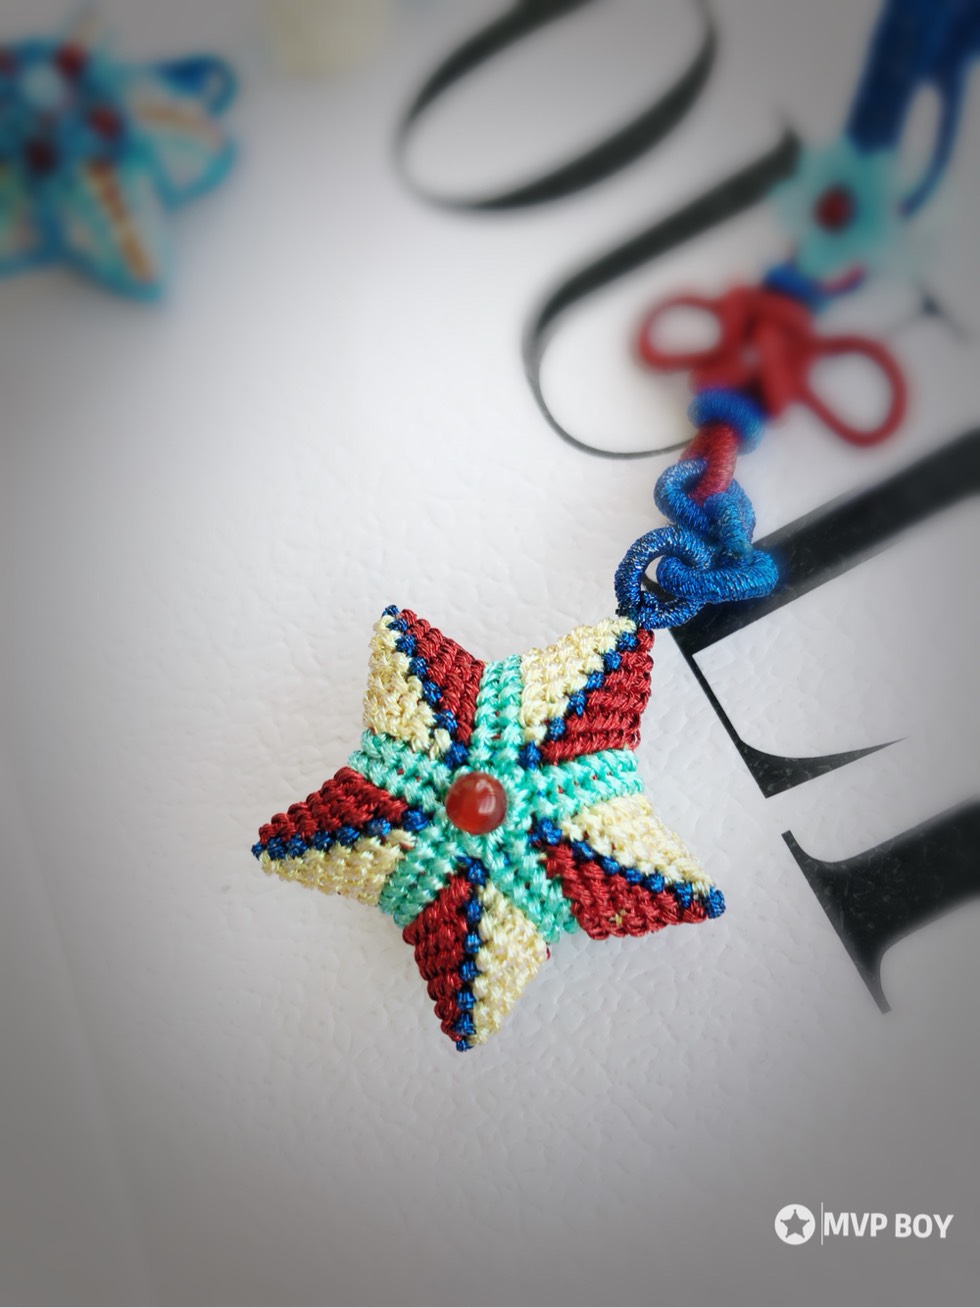 纸折星星用绳子串起来图片